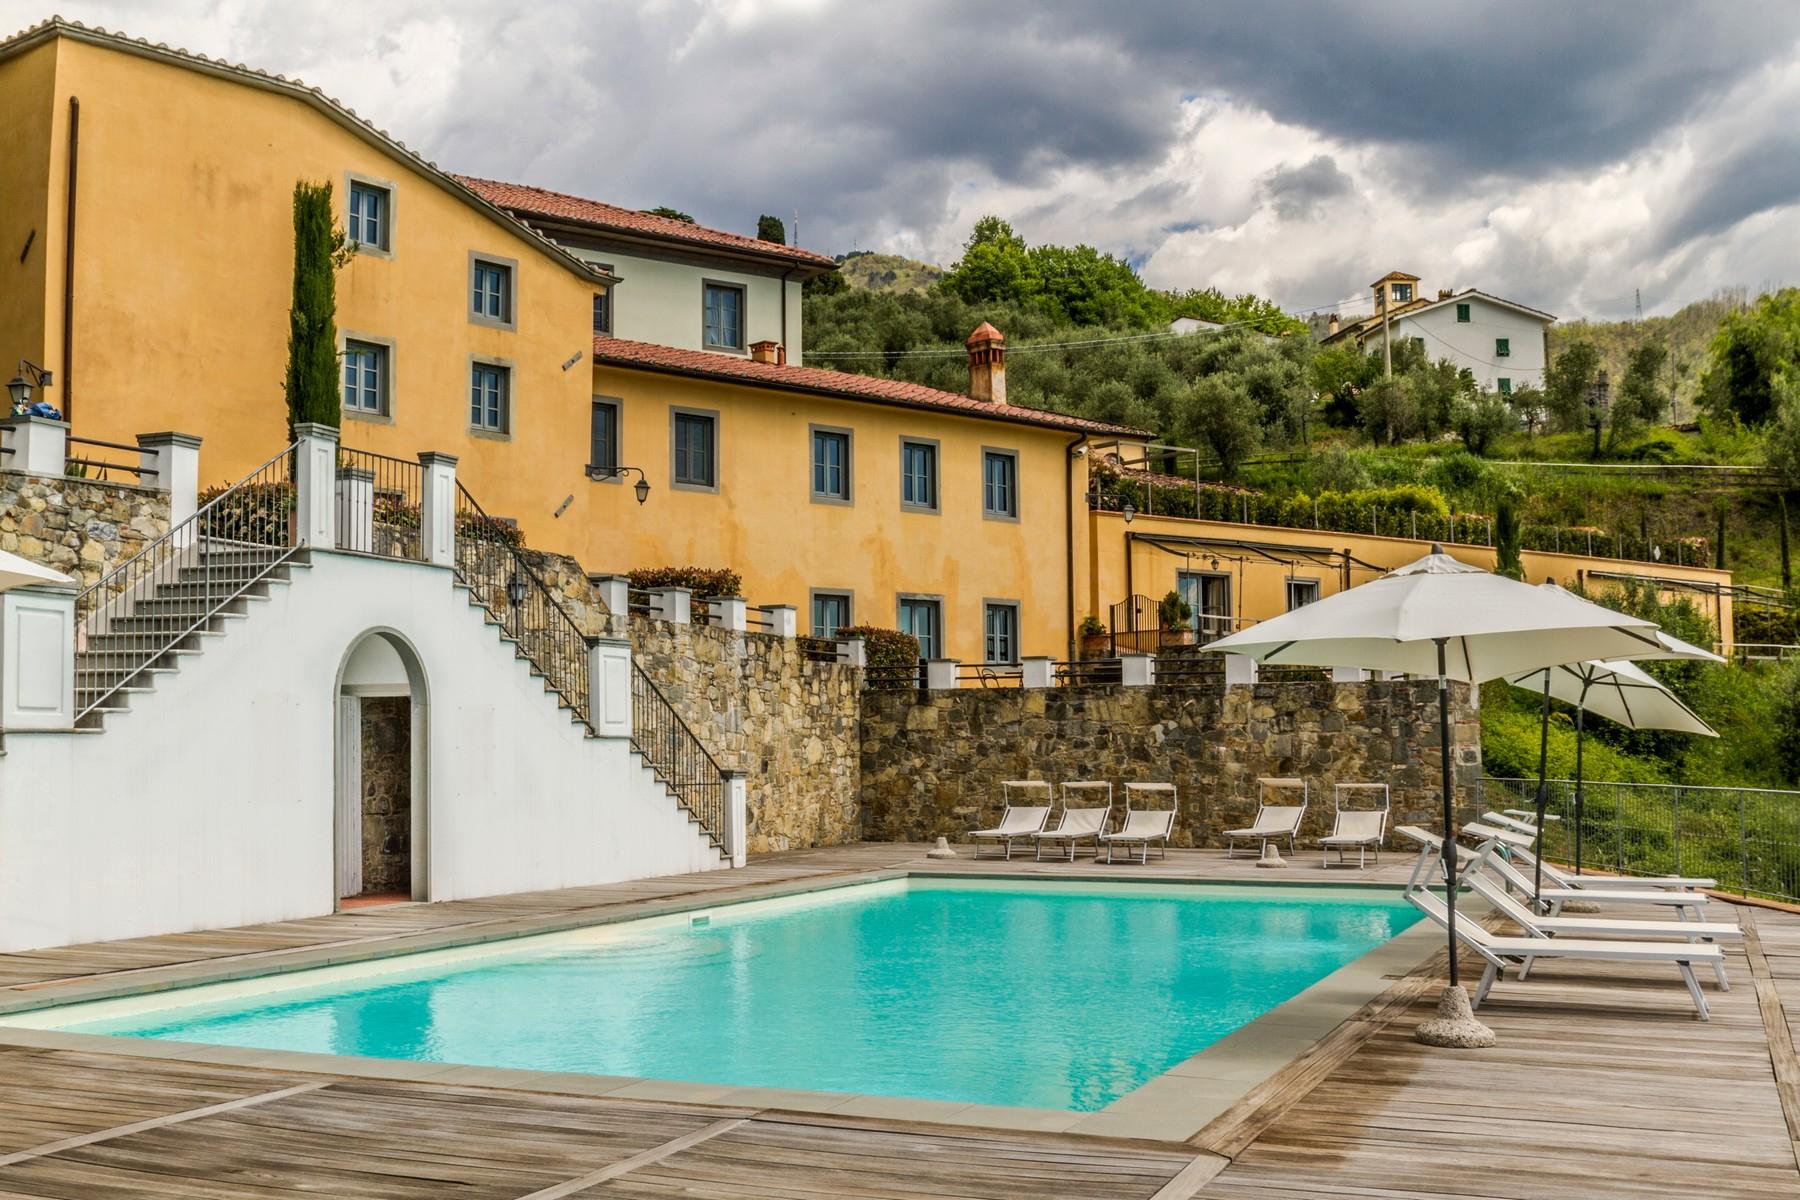 Appartamento di pregio in resort esclusivo con villa storica sulle colline di Lucca - 1